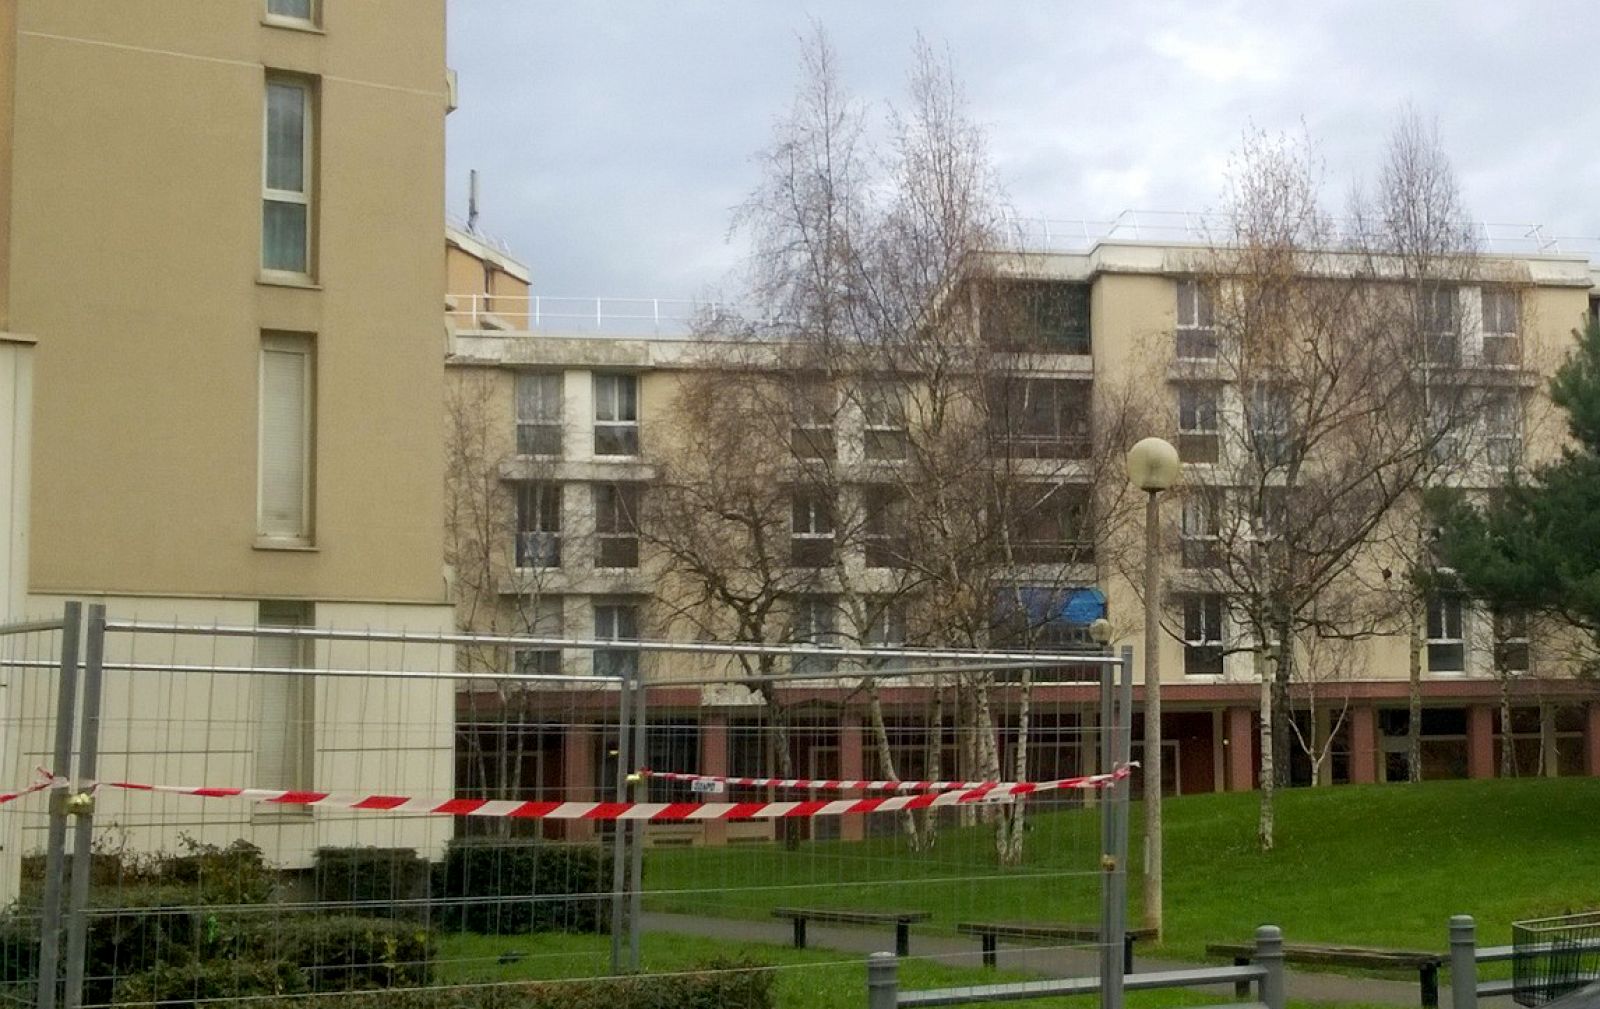 Urbanización de Villiers-sur-Marne, localidad cerca de París, en la que ha sido arrestado un hombre de 29 años vinculado con los atentados del 13 de noviembre